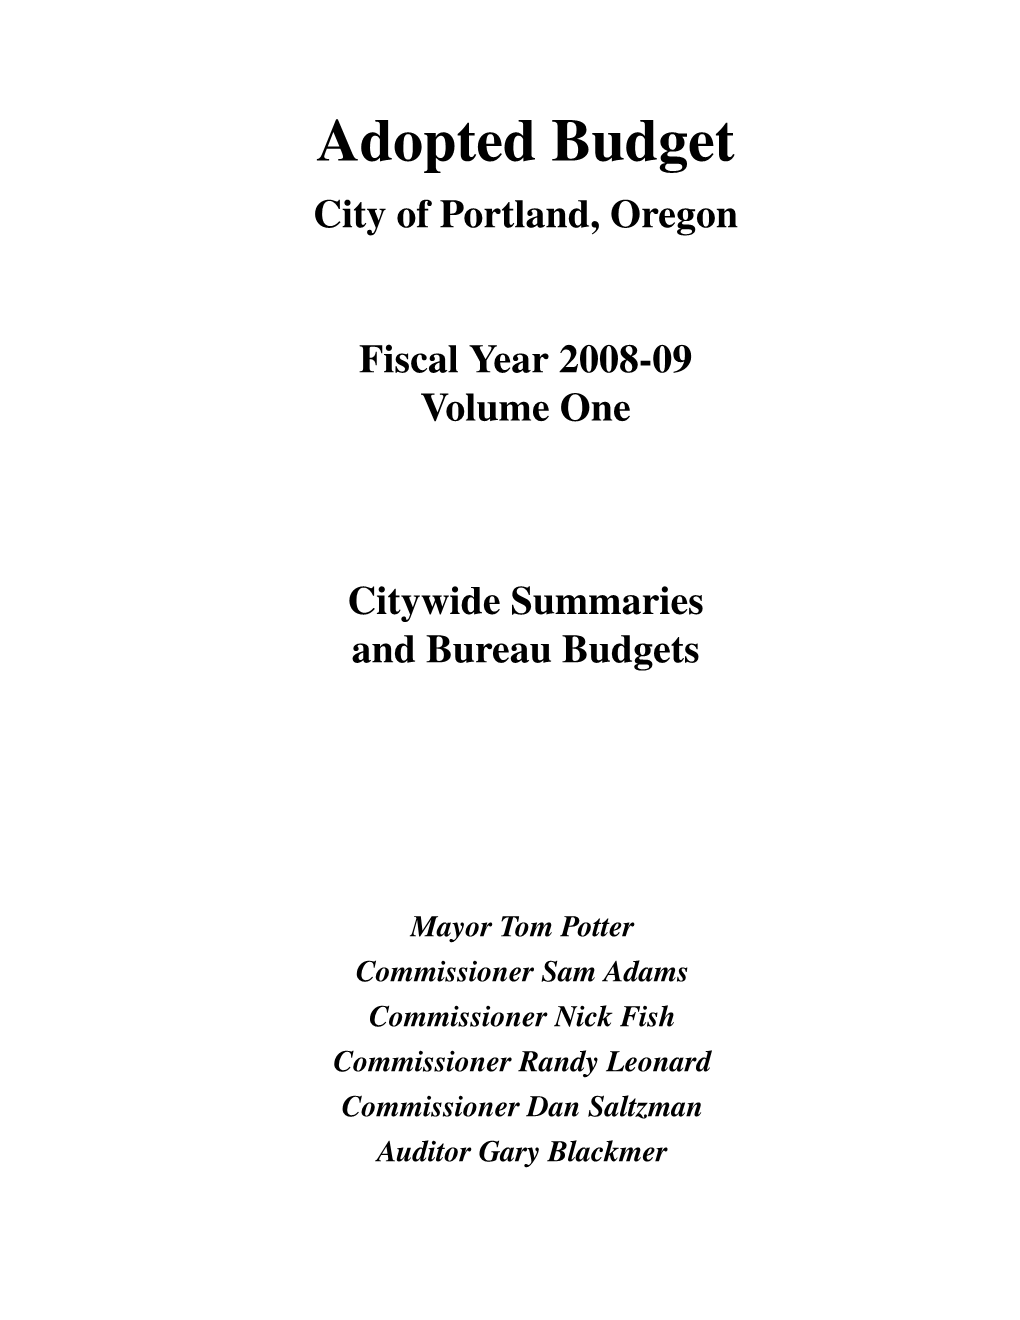 Adopted Budget City of Portland, Oregon